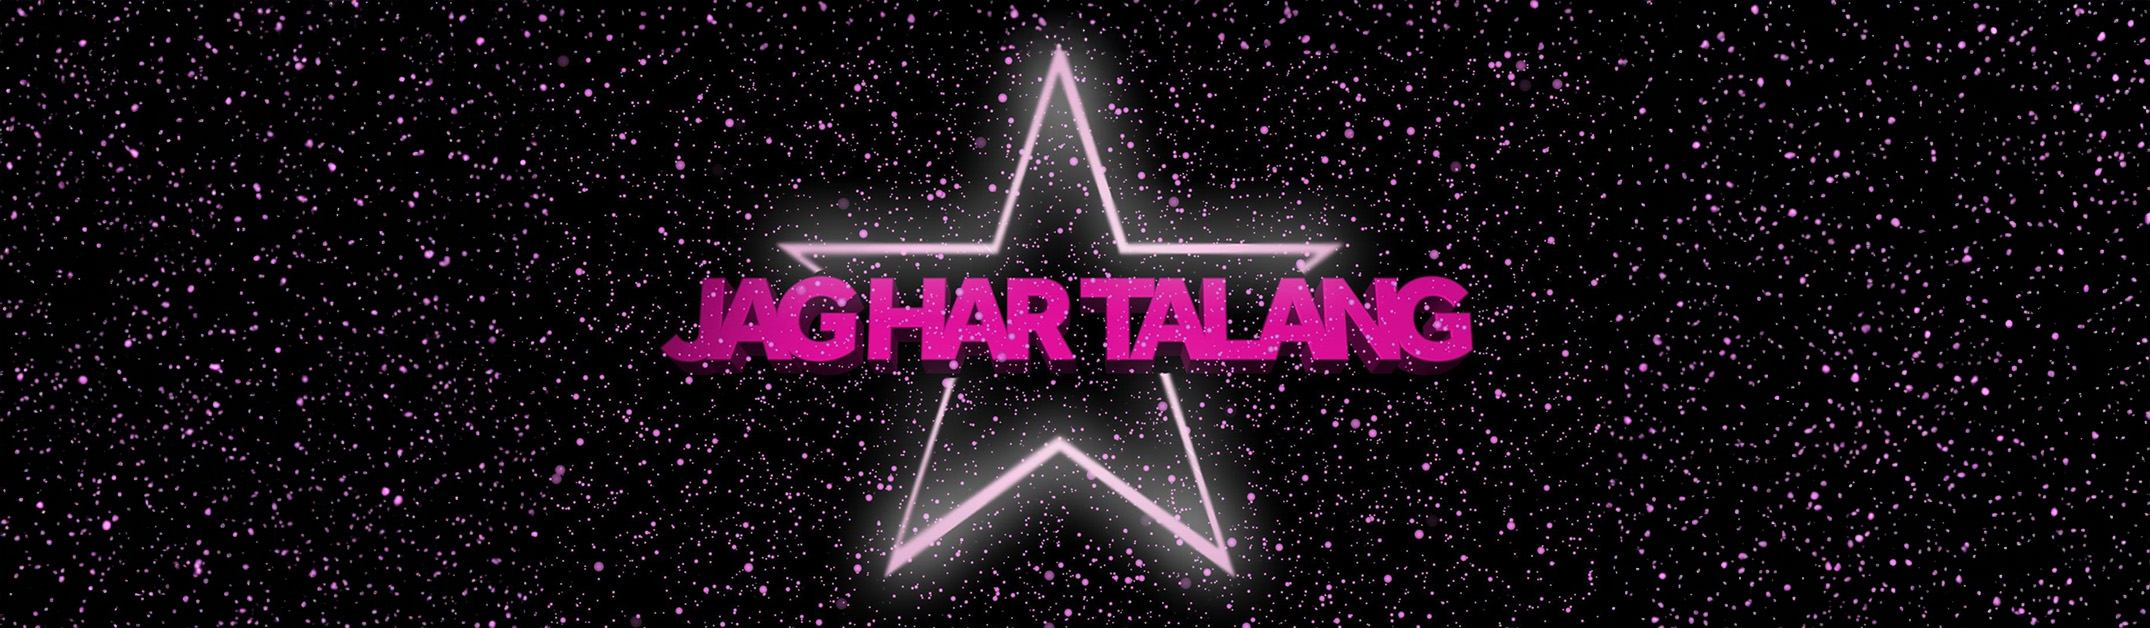 Logotype i form av en stjärna med rosa text som säger "Jag har talang"